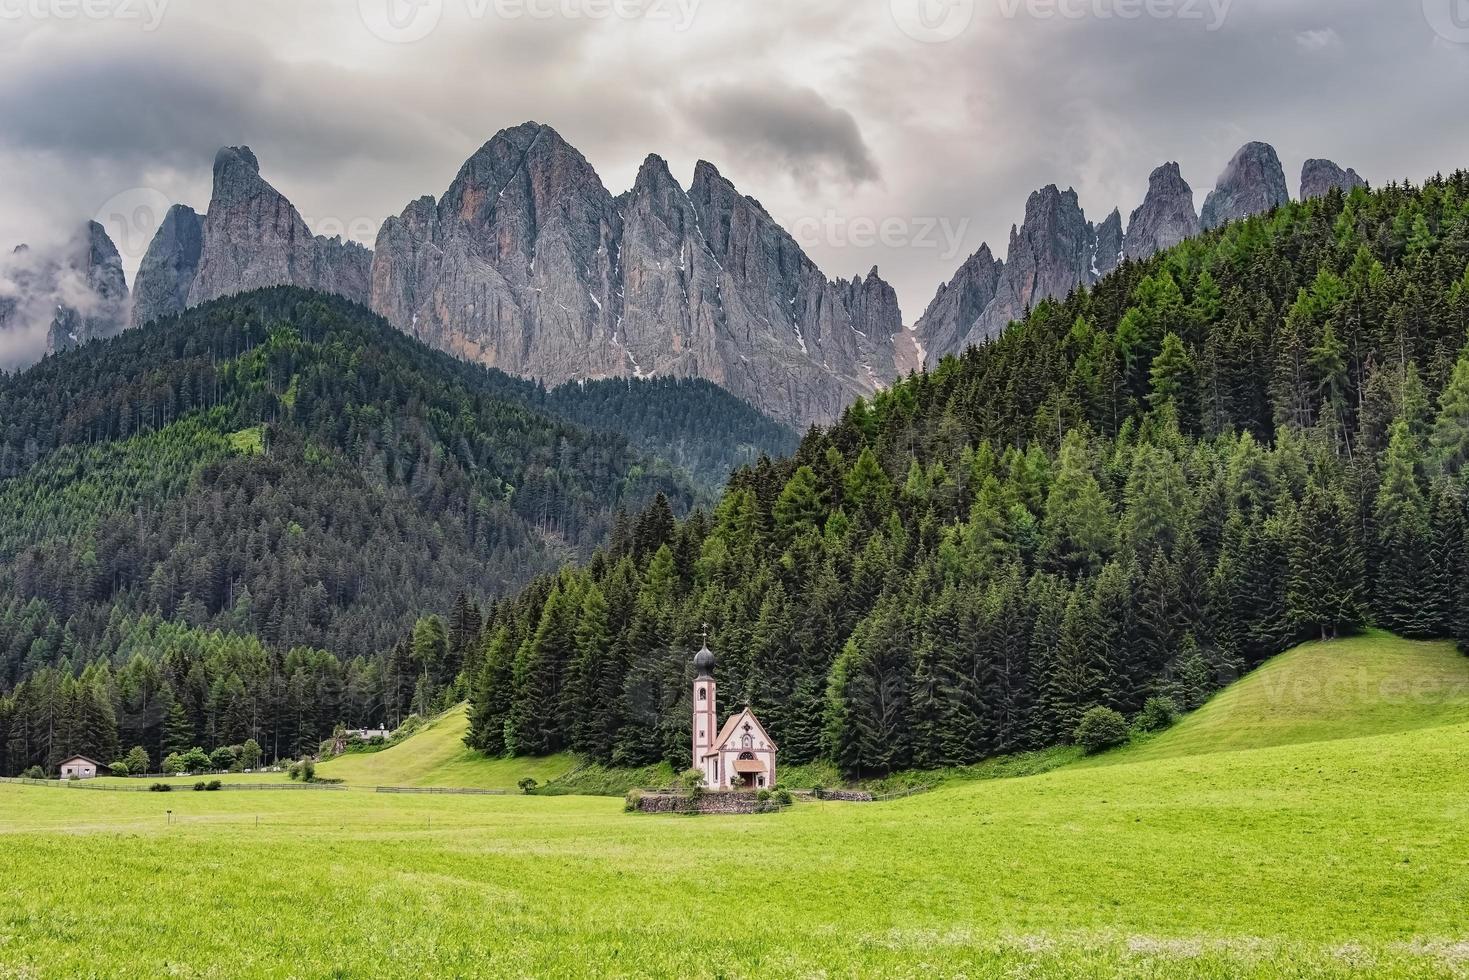 santa maddalena villaggio con bellissime montagne dolomitiche sullo sfondo, val di funes, italia foto